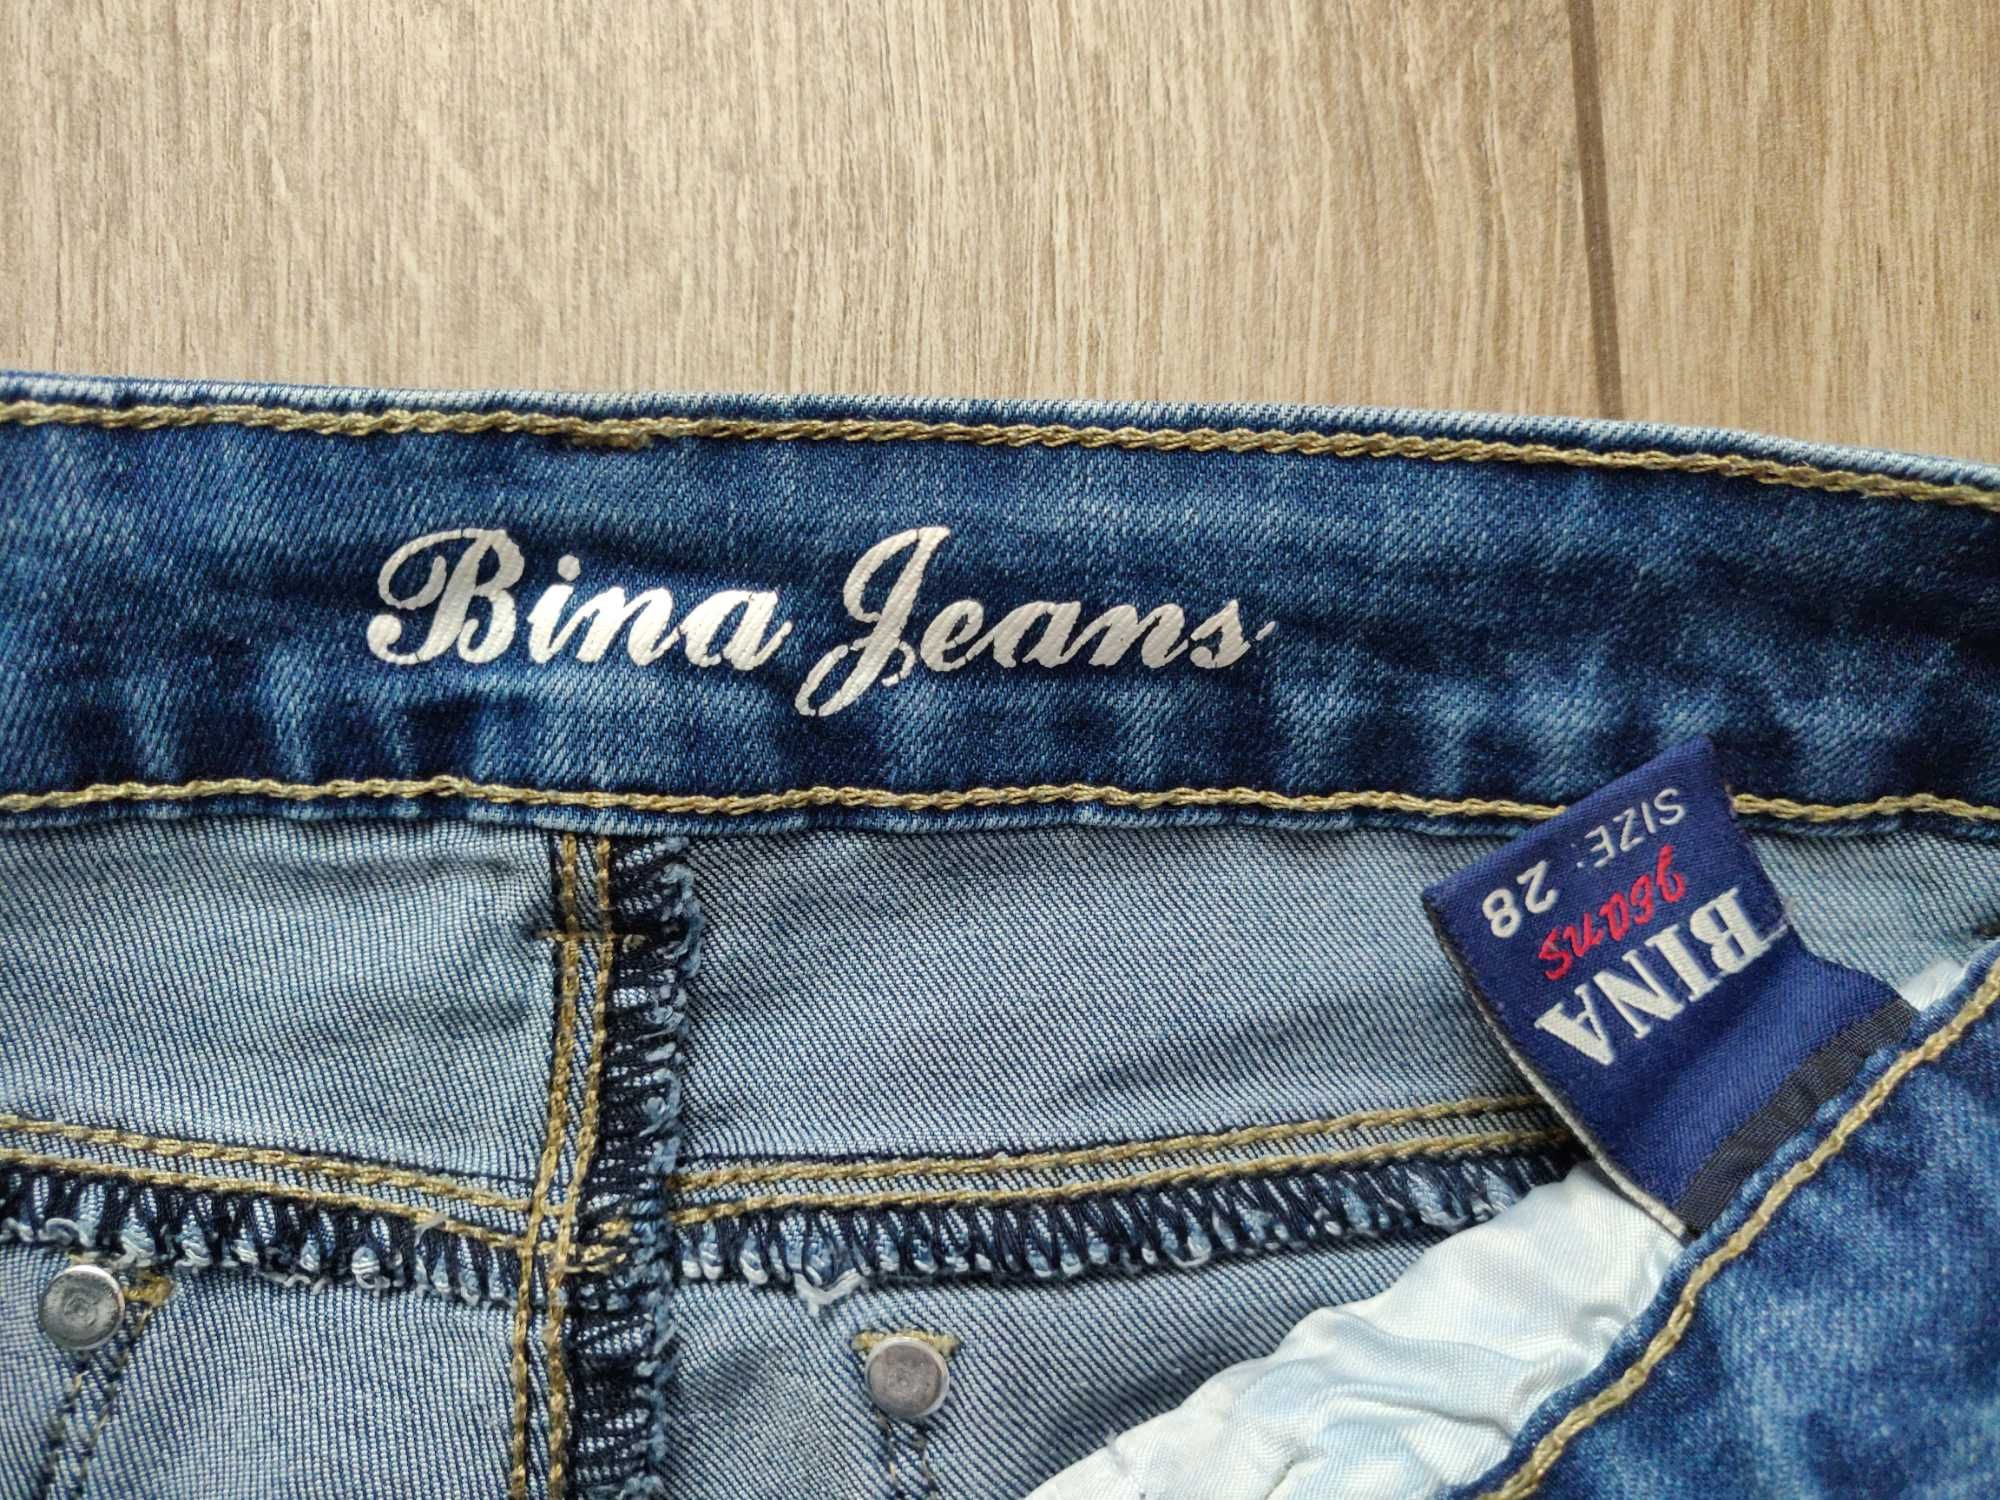 Джинсы Bina Jeans р. 28 стрейч, cредняя посадка, светло- синие